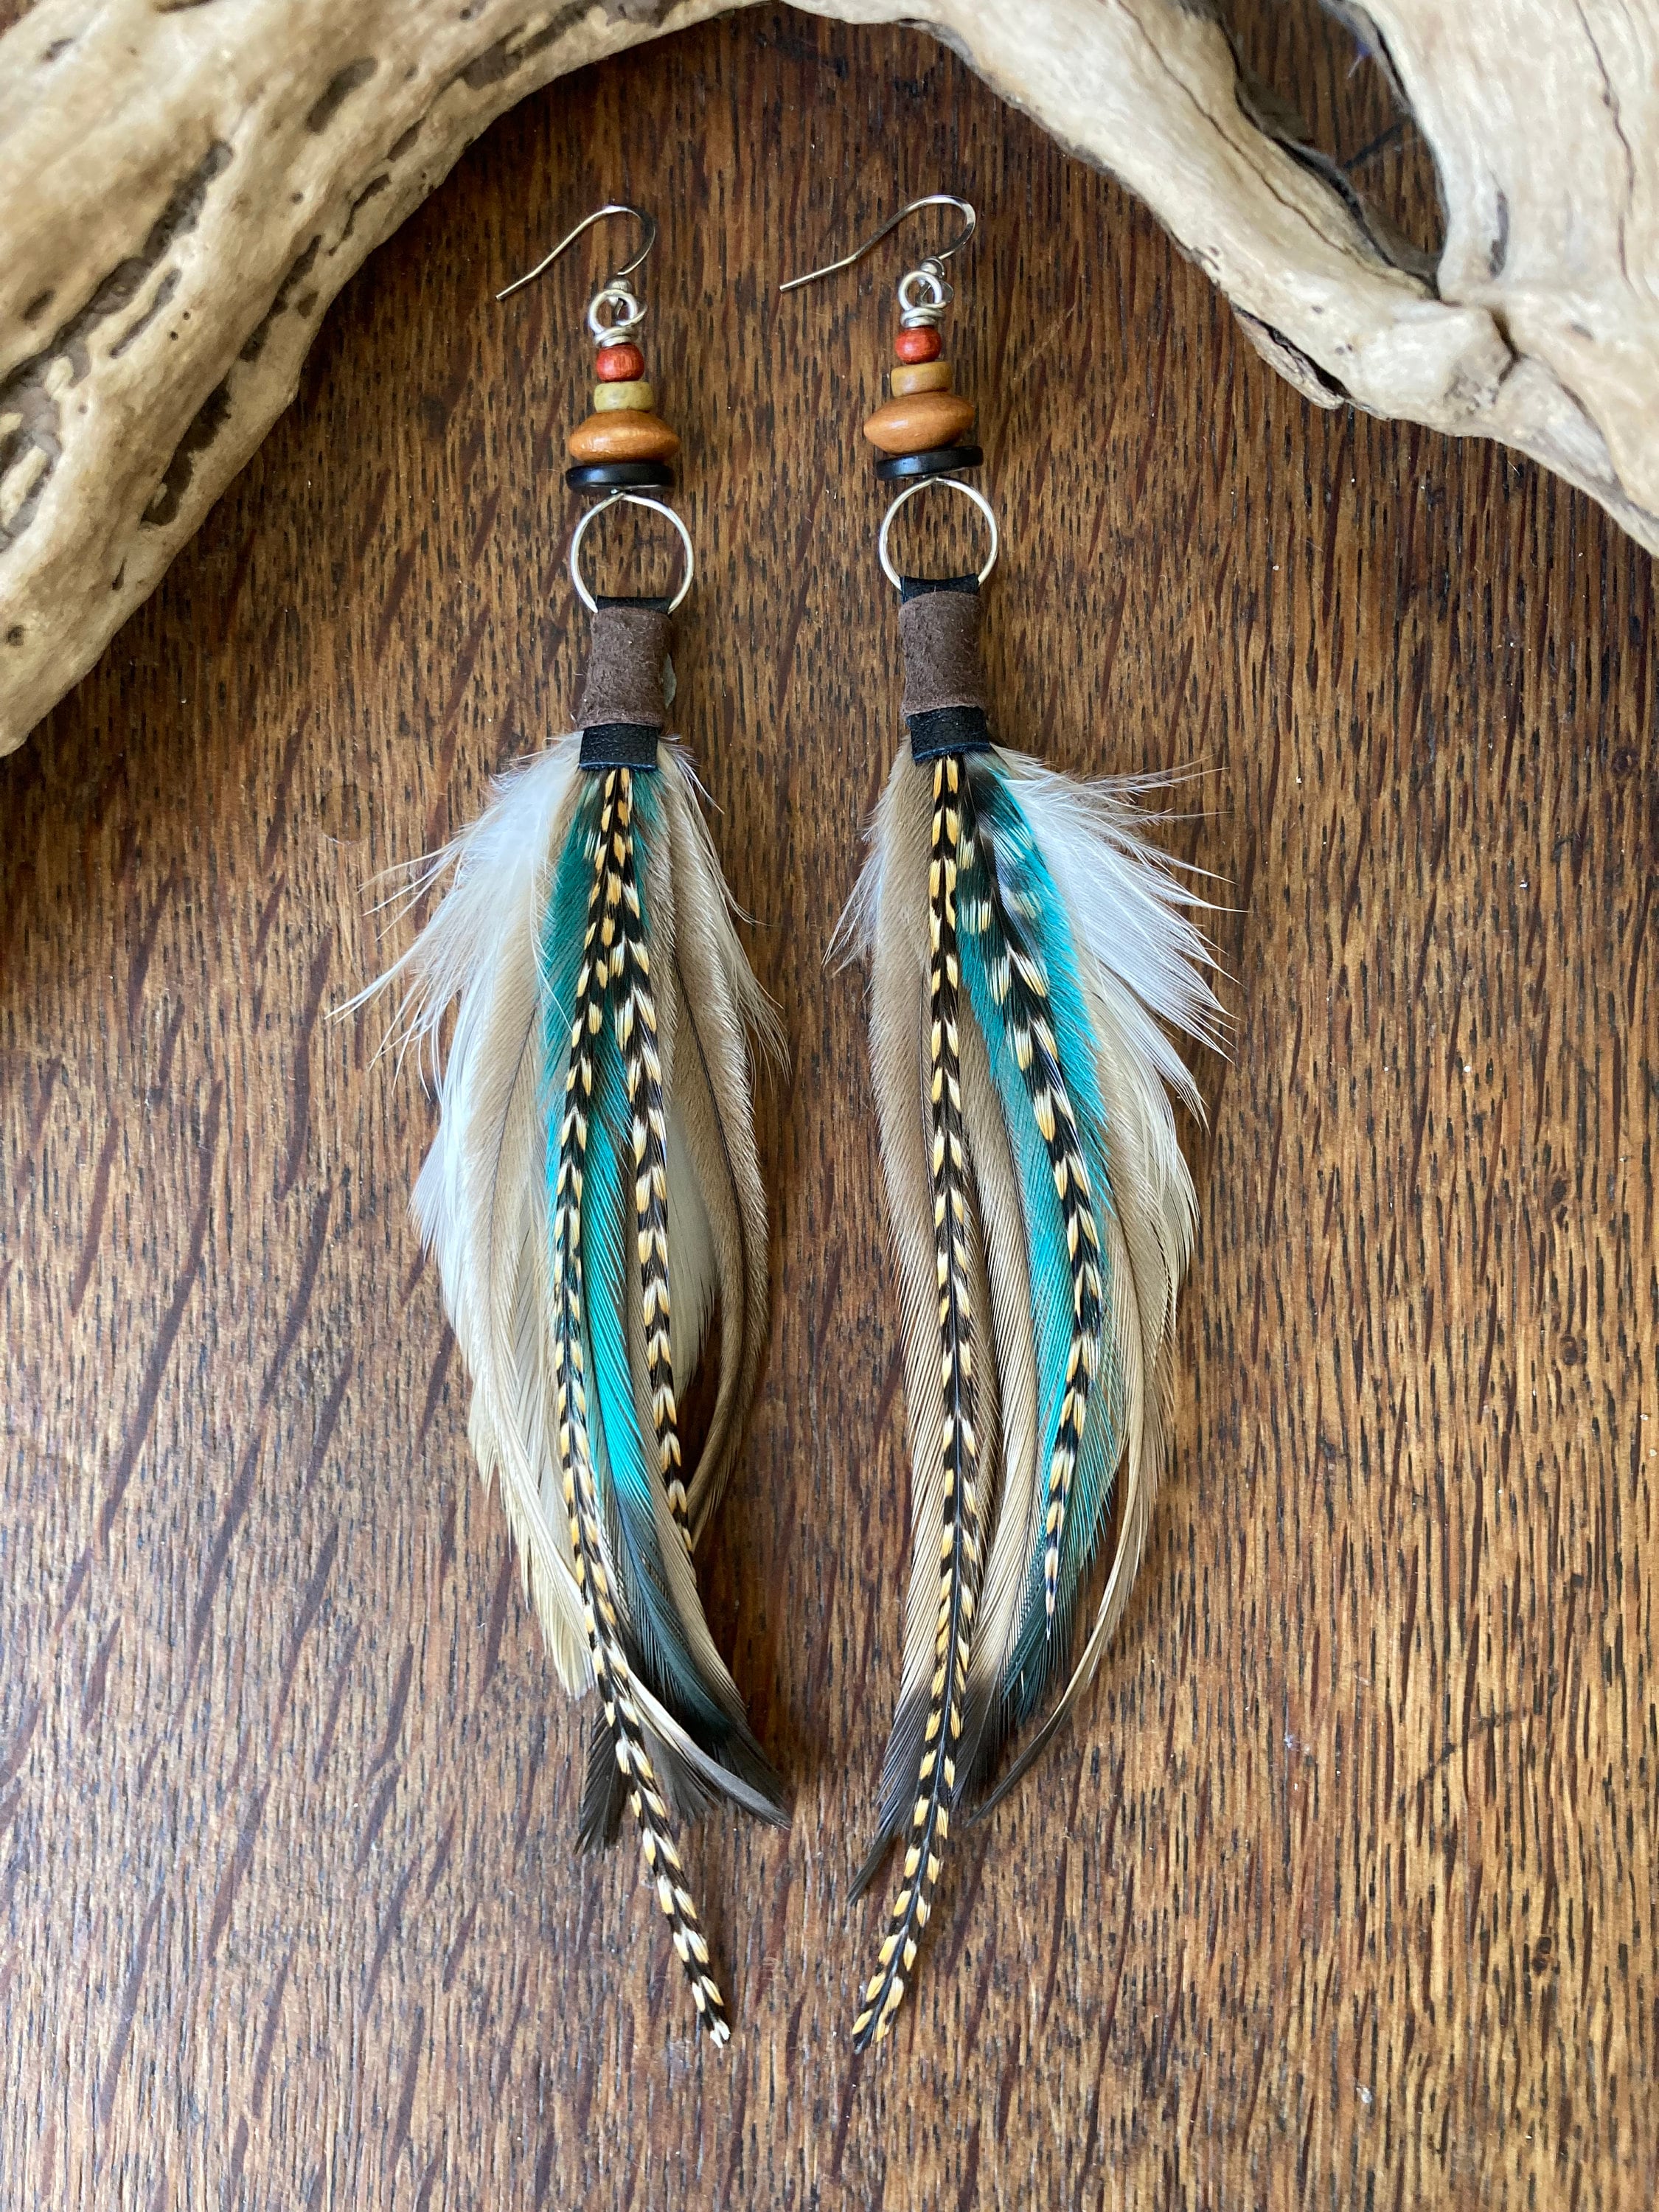 Real Feather Earrings, Boho Feather Earring, Hoop Earrings, Bohemian Jewelry, Boho Jewellery, Gifts for Women, Beaded Feather Earrings